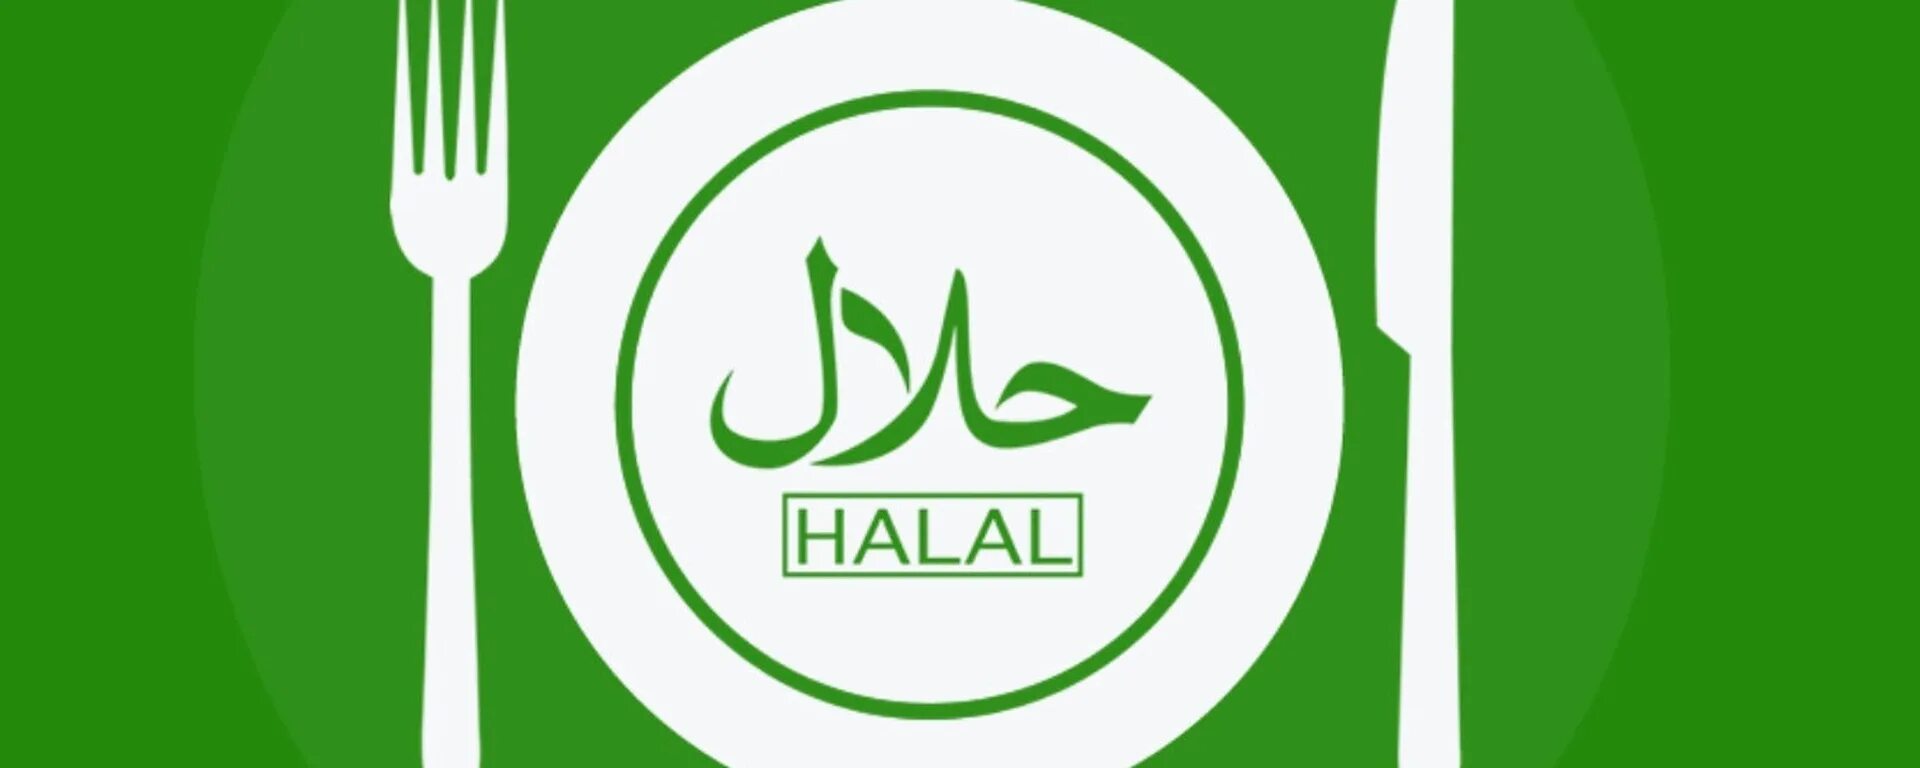 Халяль нижний новгород. Халяль. Эмблема Халяль. Логотип кафе Халяль. Значок Халяль зеленый.